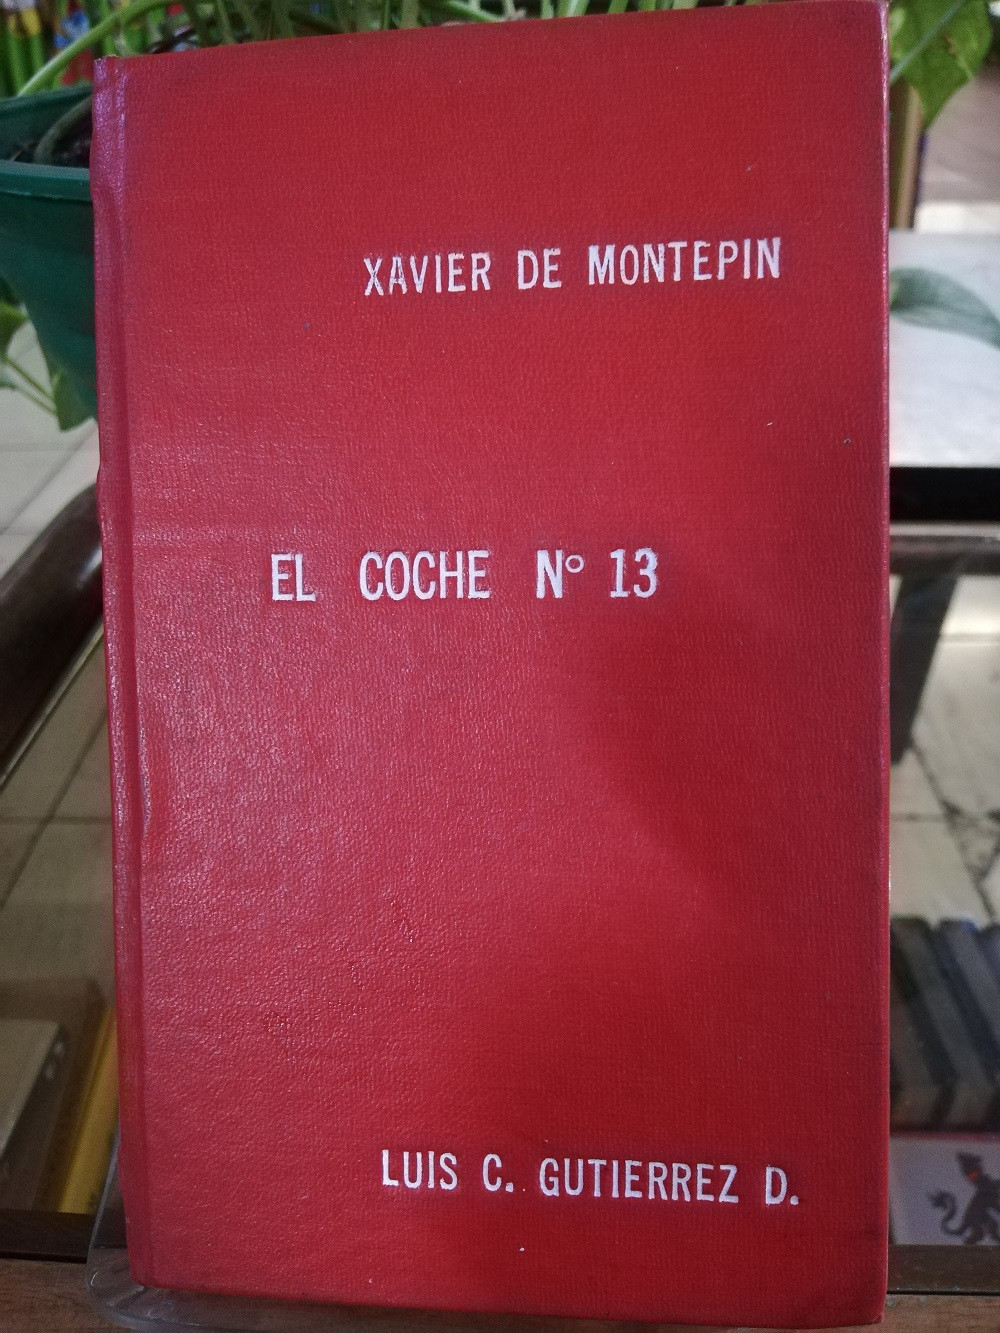 Imagen EL COCHE No. 13 -XAVIER DE MONTEPIN 2